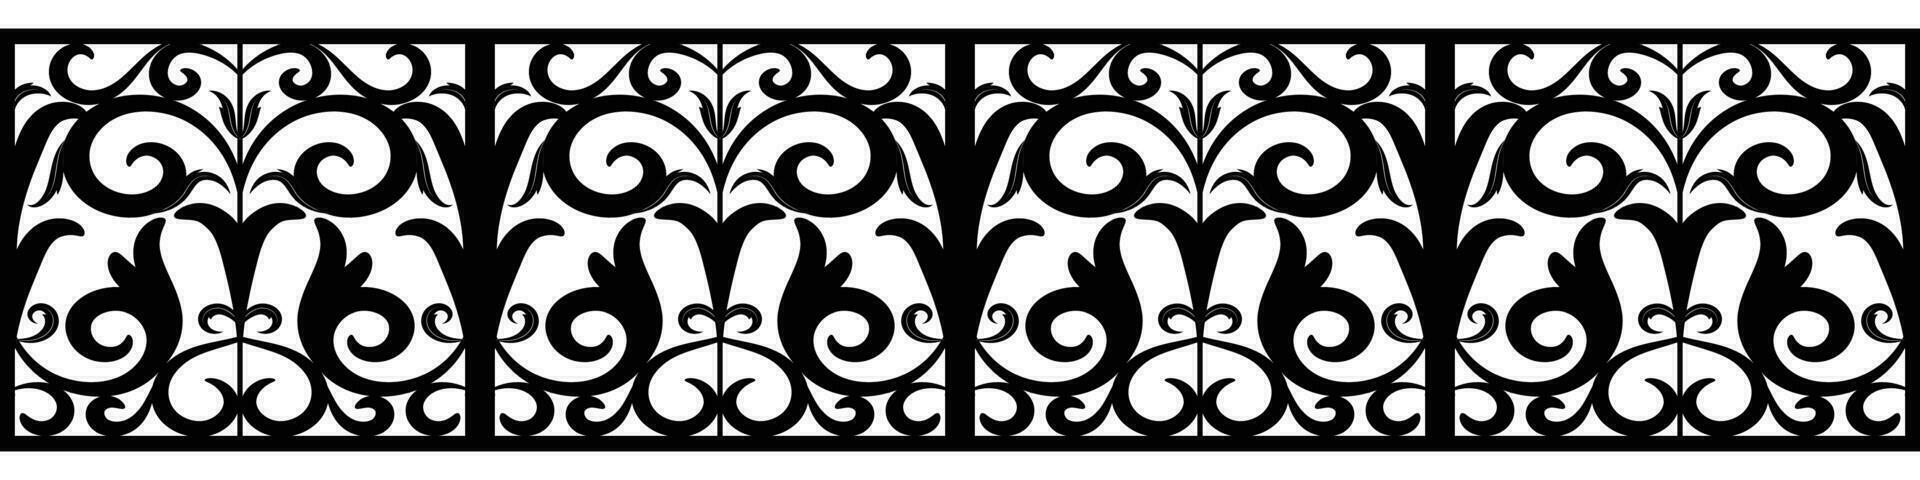 western patroon grens decoratief symmetrisch tegel patroon met wijnoogst byzantijns stijl elementen. vector